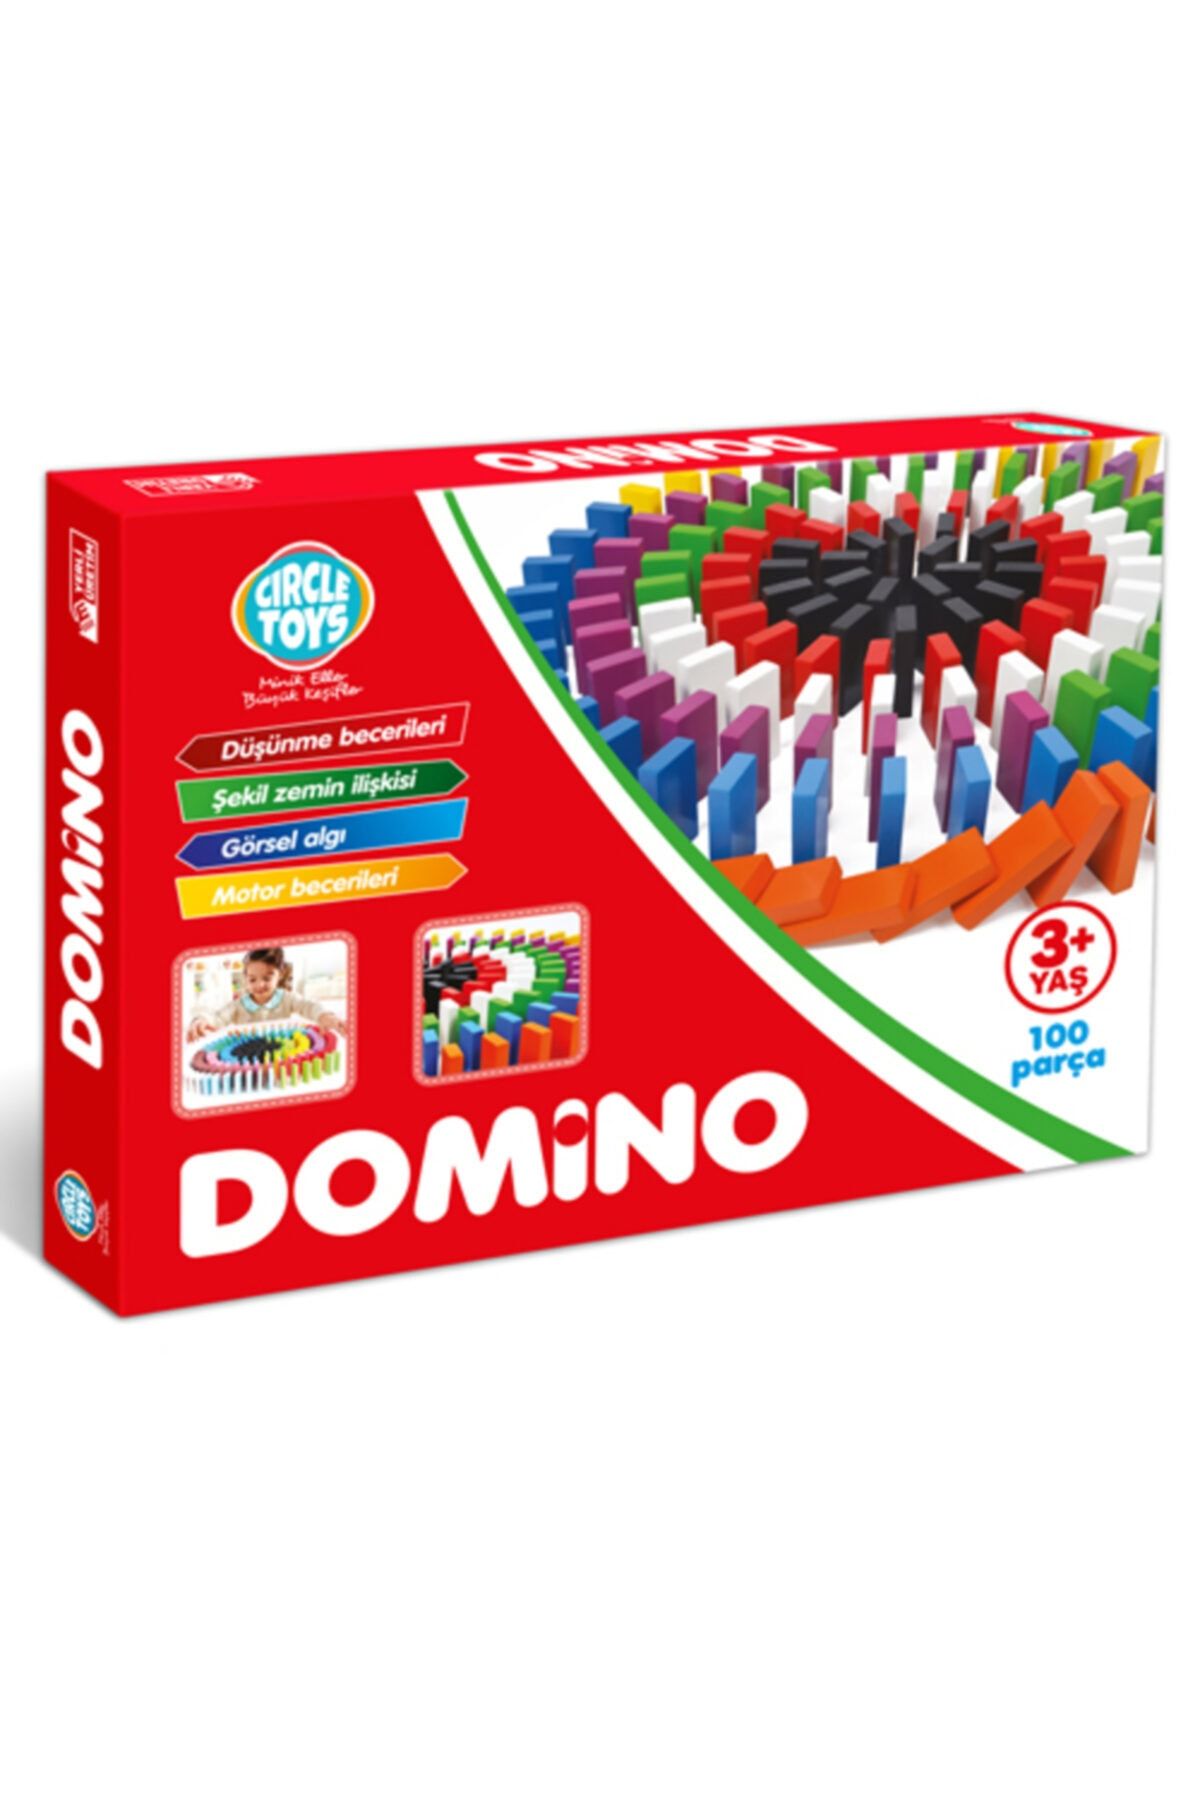 Özlem Toys Circle Toys Renkli Ahşap Domino Taşları Çocuklar Için Eğitici Süper Eğlenceli 100 Parça +3 Yaş